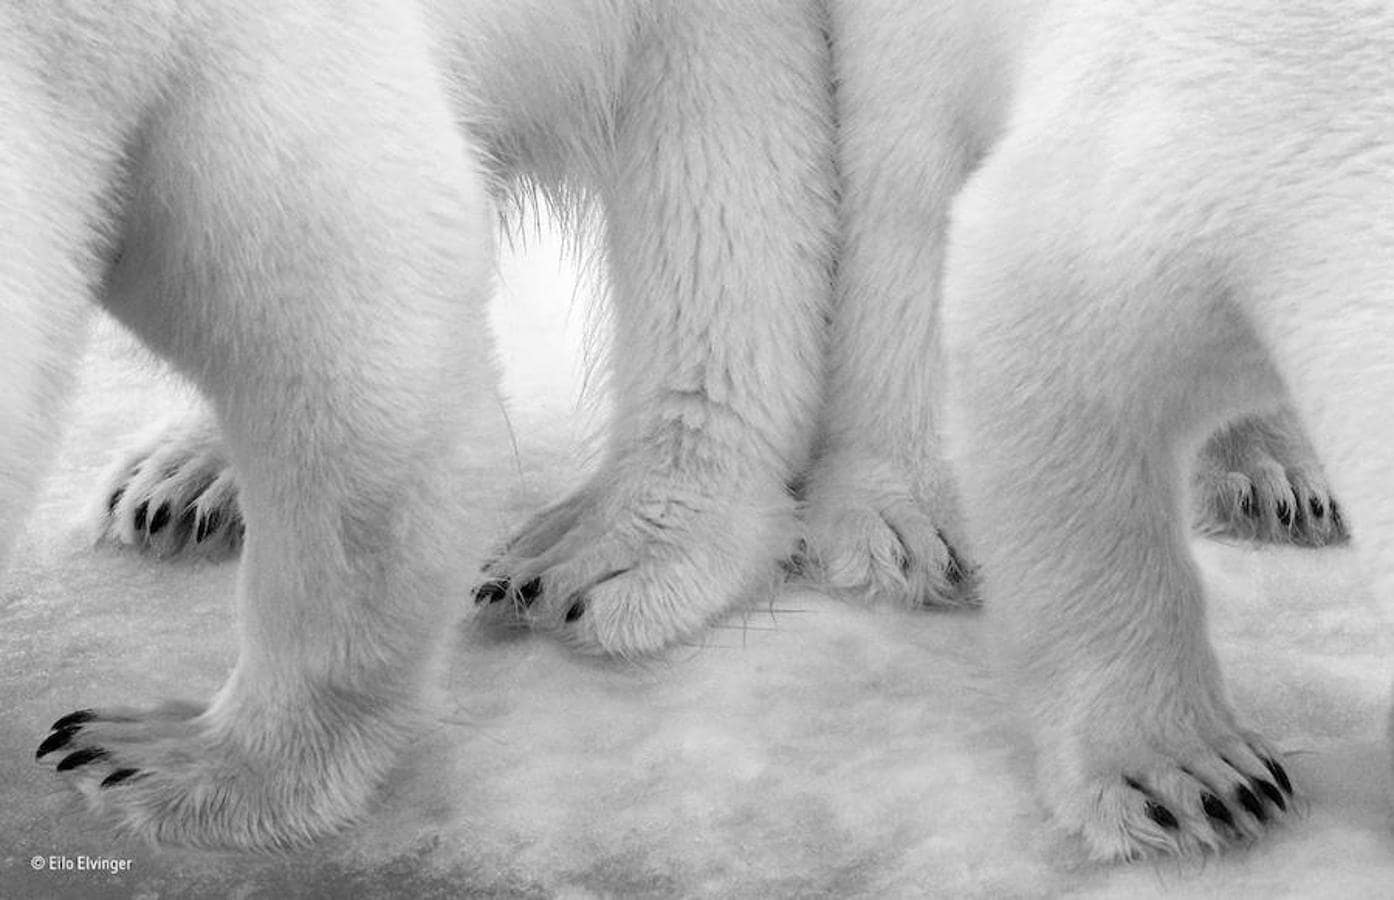 Estos osos polares captados en Svalbard (Noruega) se ha impuesto en la categoría «Blanco y negro». Eilo Elvinger